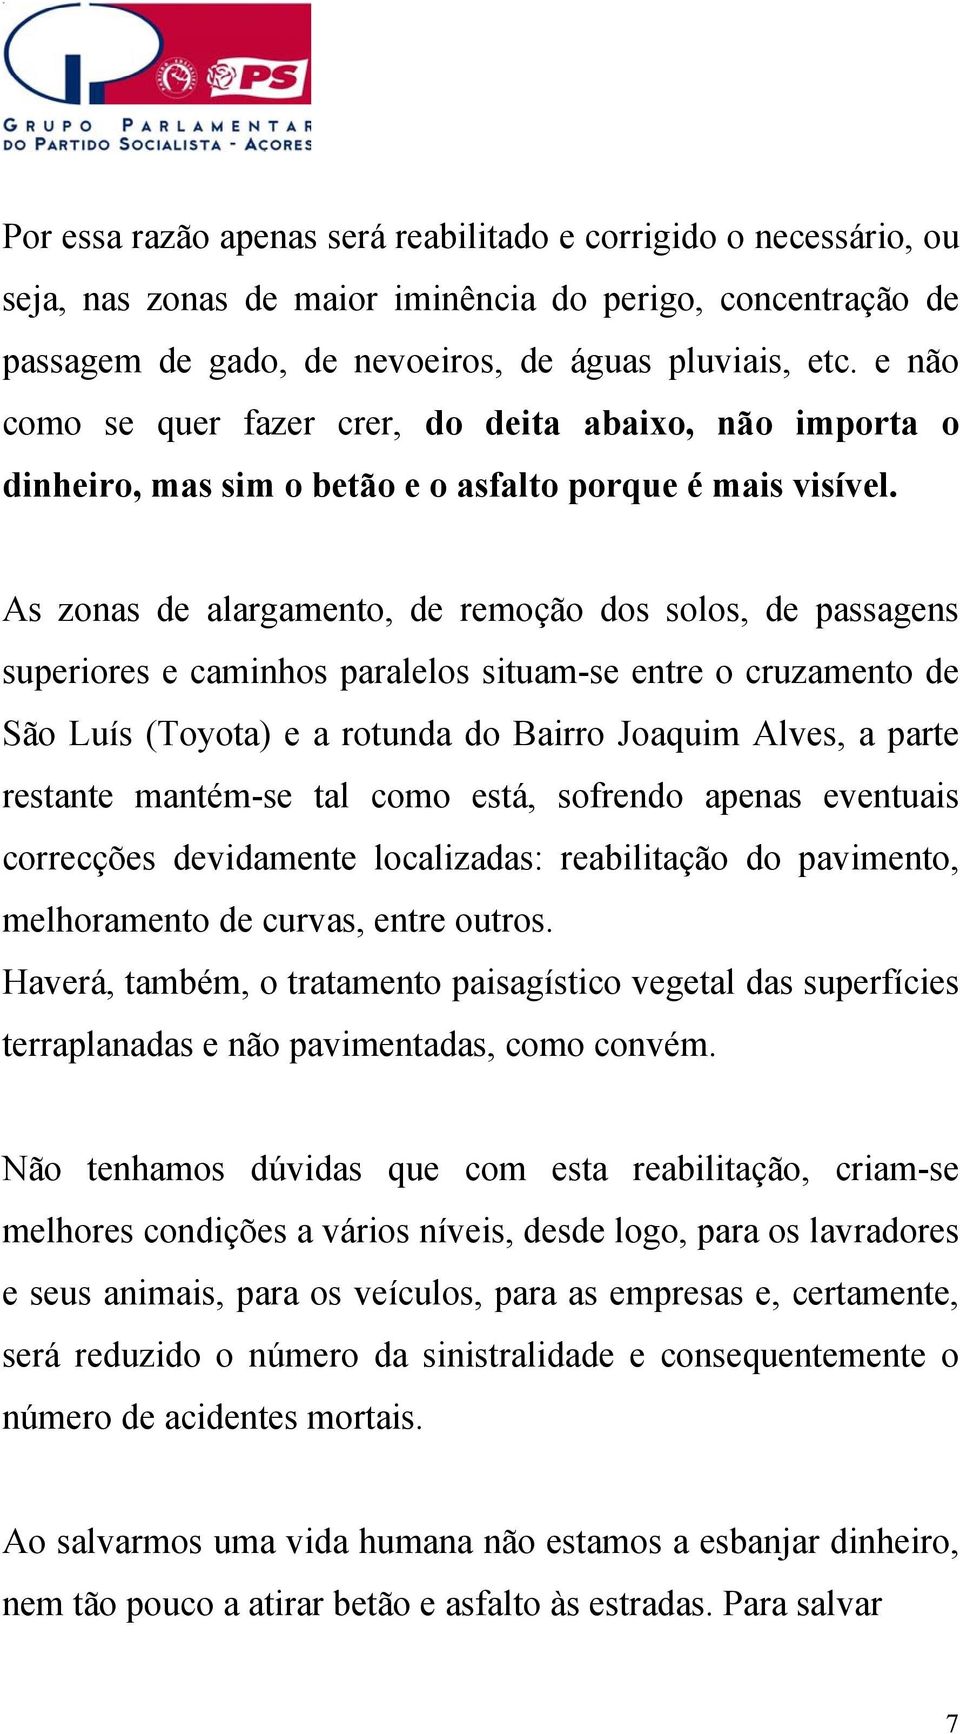 As zonas de alargamento, de remoção dos solos, de passagens superiores e caminhos paralelos situam-se entre o cruzamento de São Luís (Toyota) e a rotunda do Bairro Joaquim Alves, a parte restante